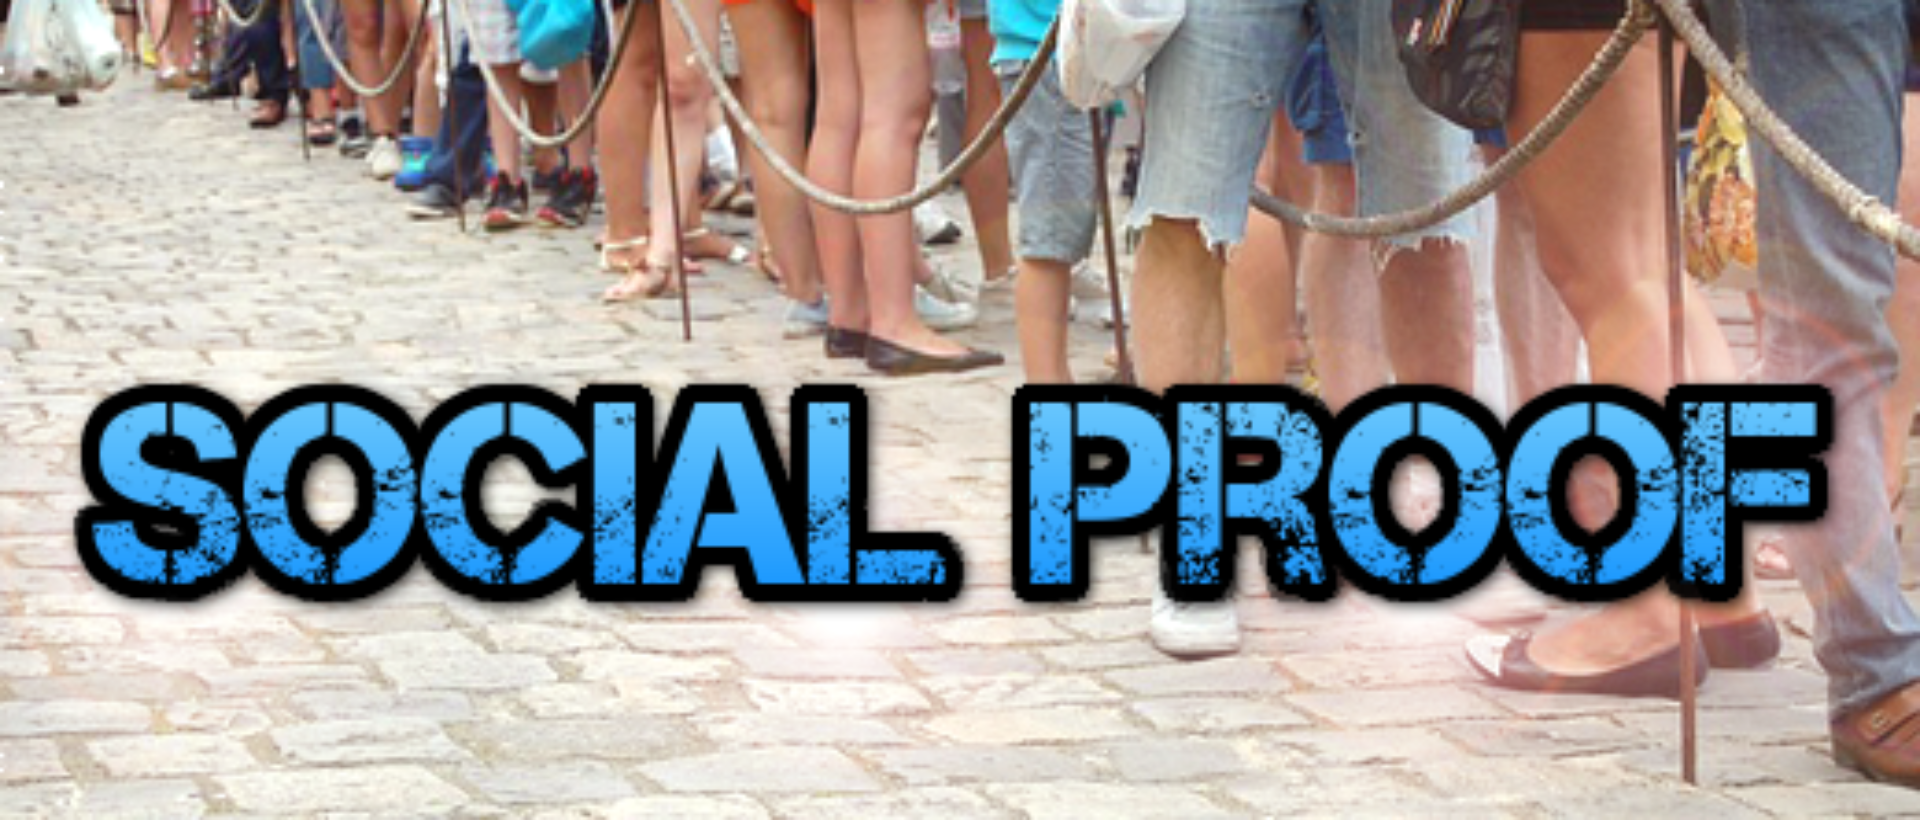 Social Proof als psychologisches Prinzip